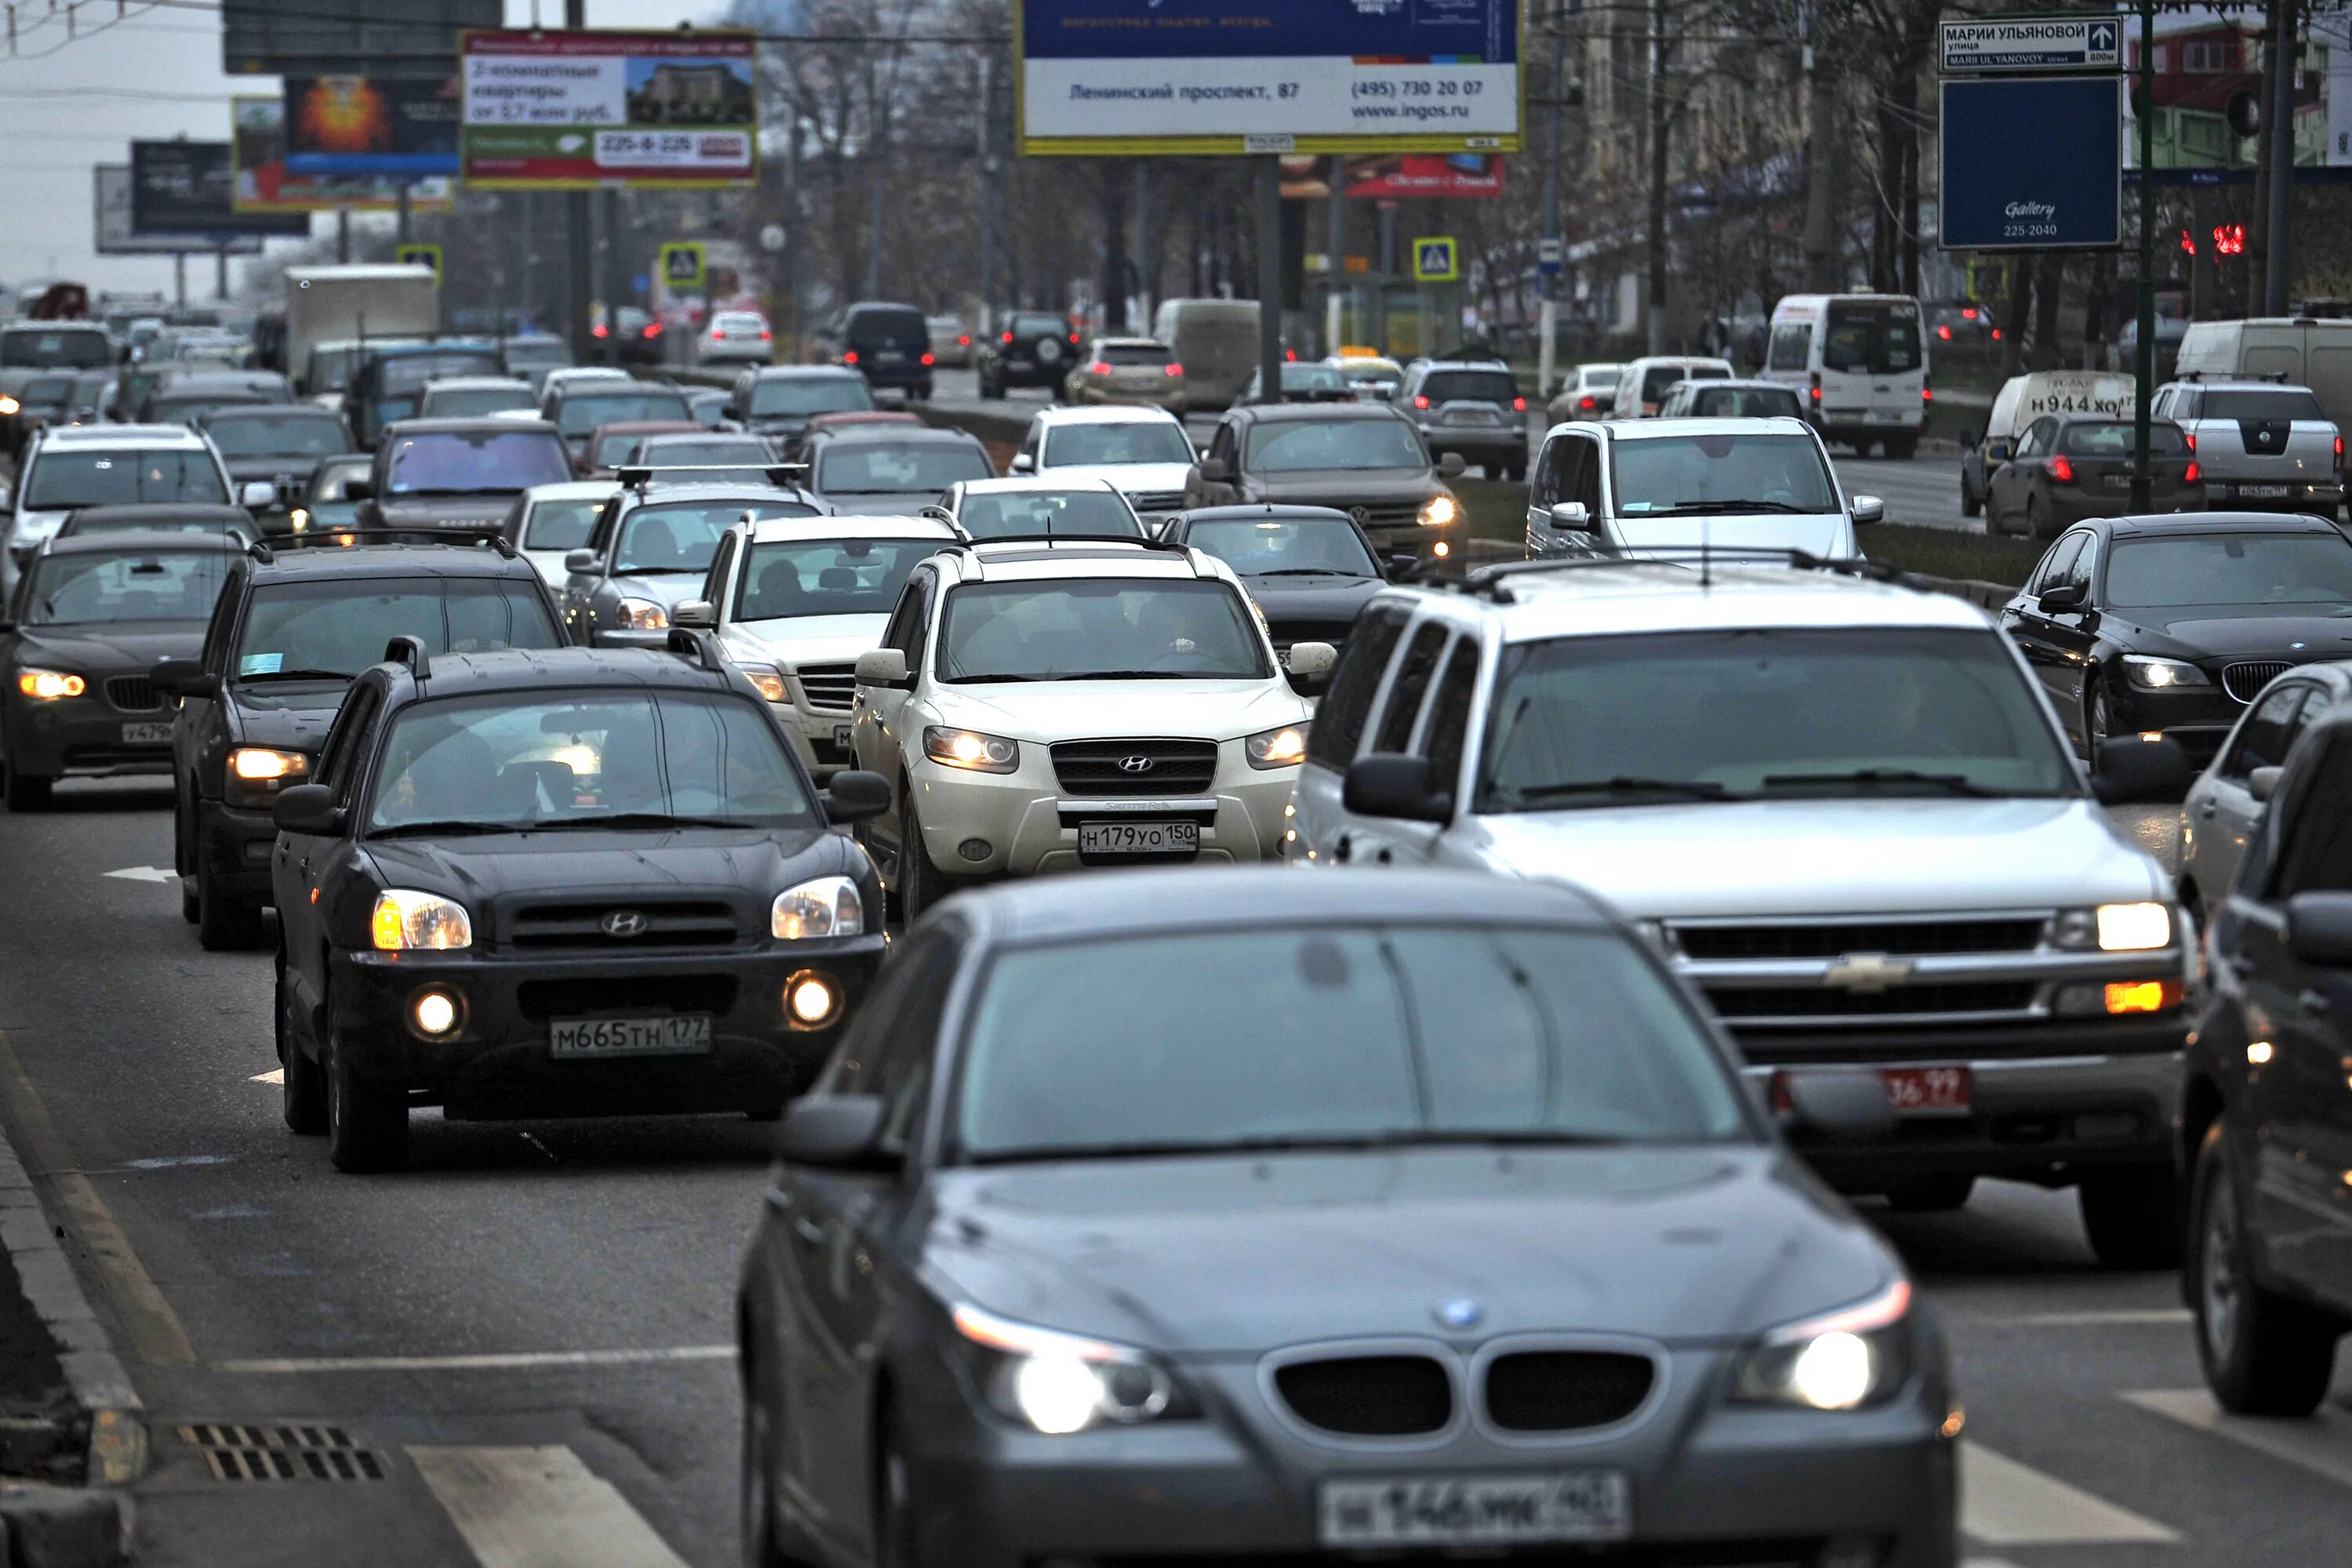 Дорога много пробка. Пробка машин. Машины в Москве. Автомобили в пробке. Поток машин.